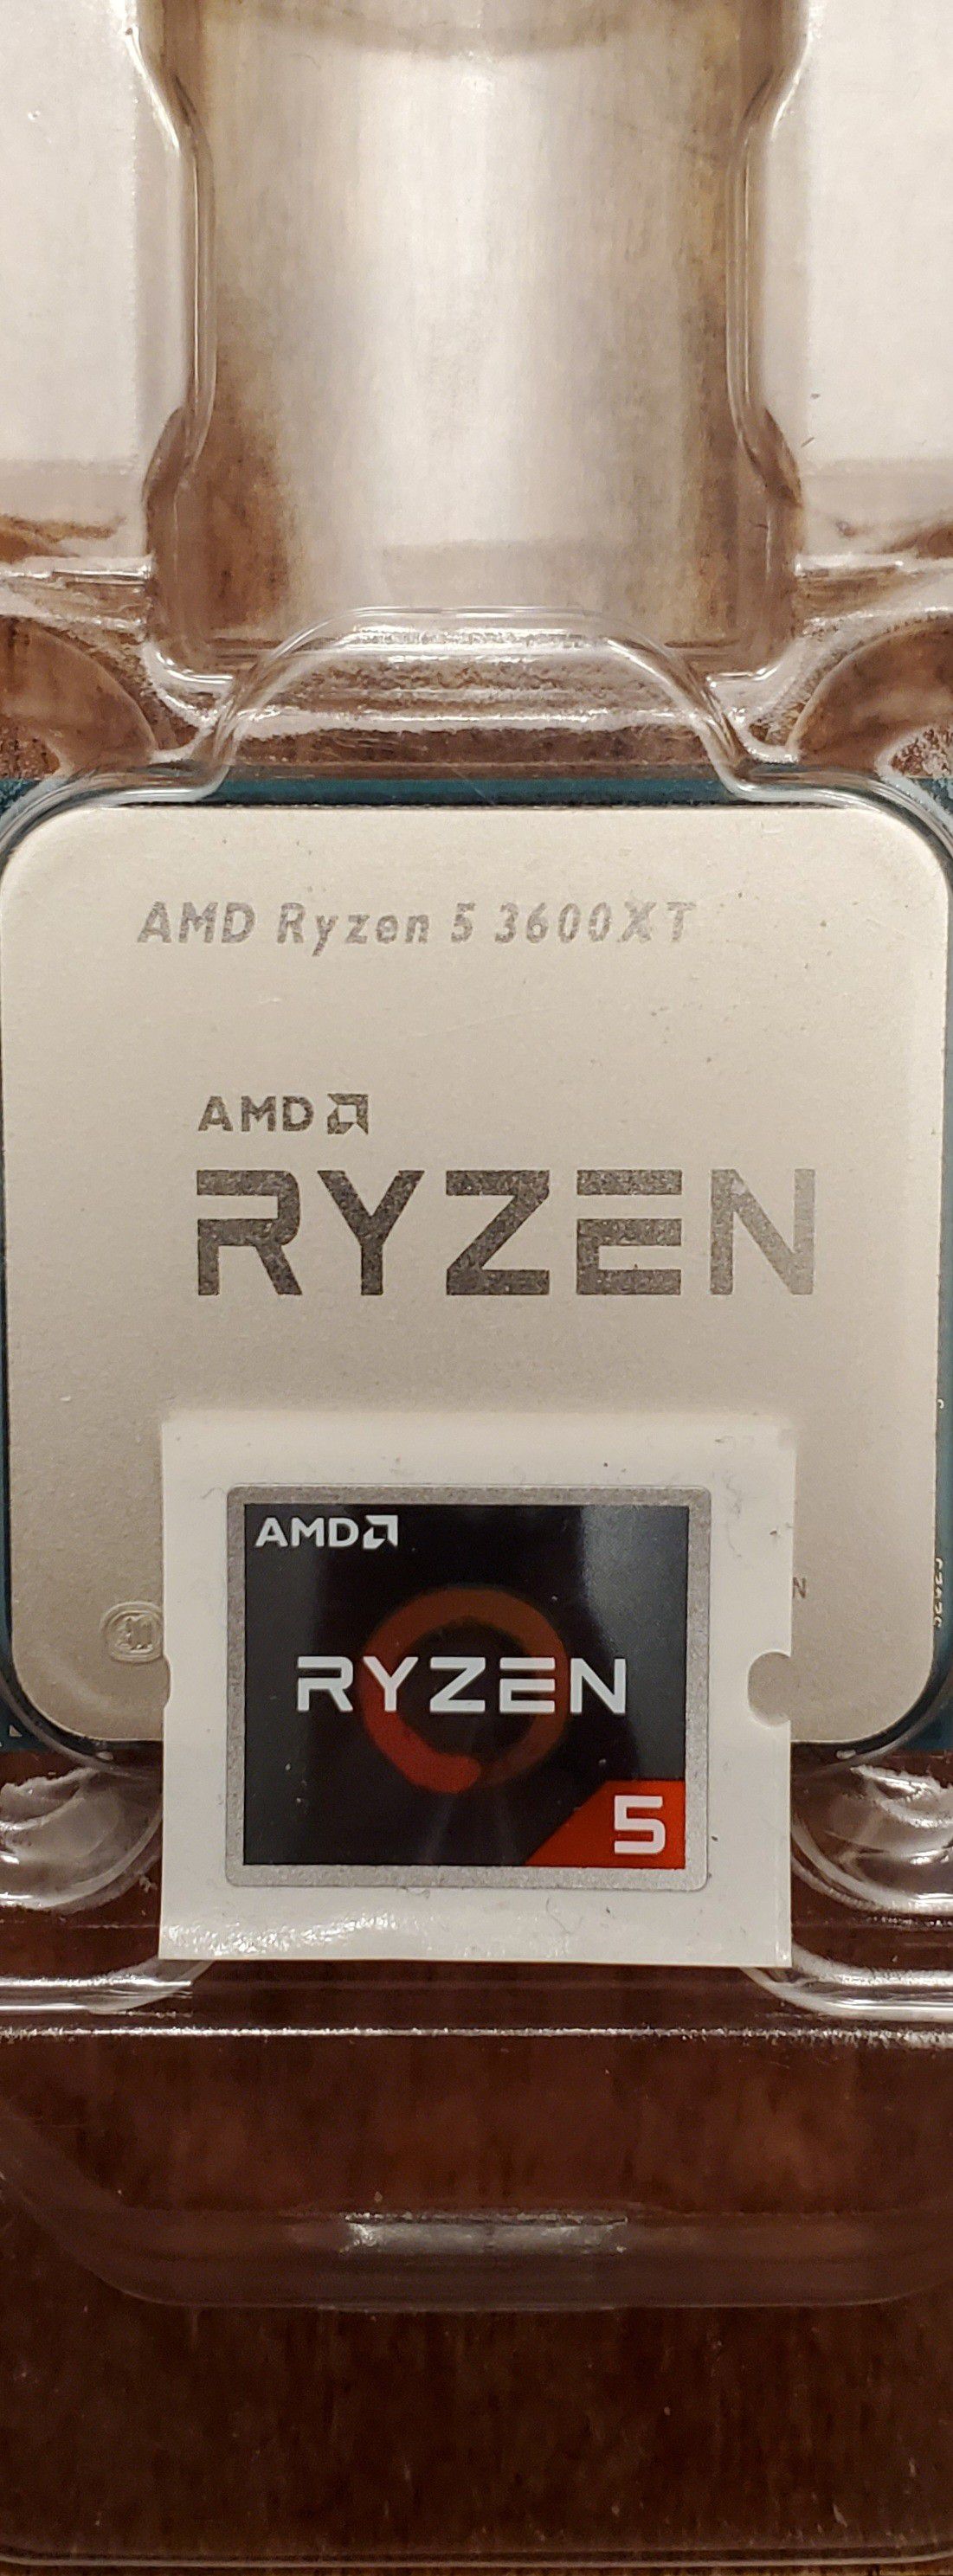 RYZEN 5 AMD AM4 3600XT 4.5GHZ DESKTOP CPU PROCESSOR